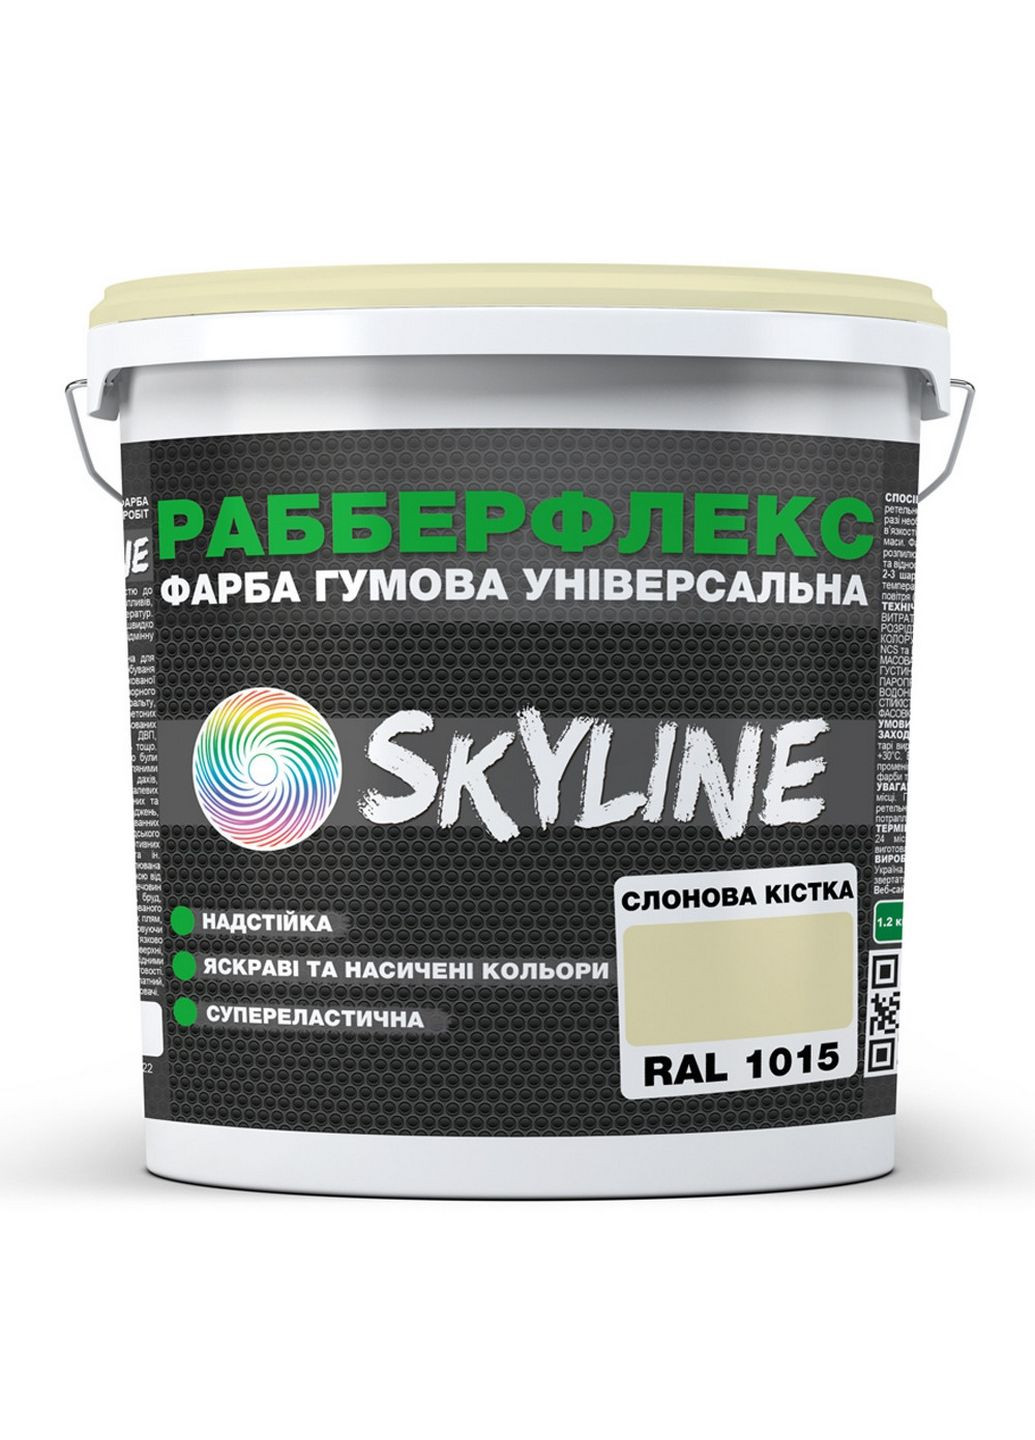 Надстійка фарба гумова супереластична «РабберФлекс» 3,6 кг SkyLine (289462316)